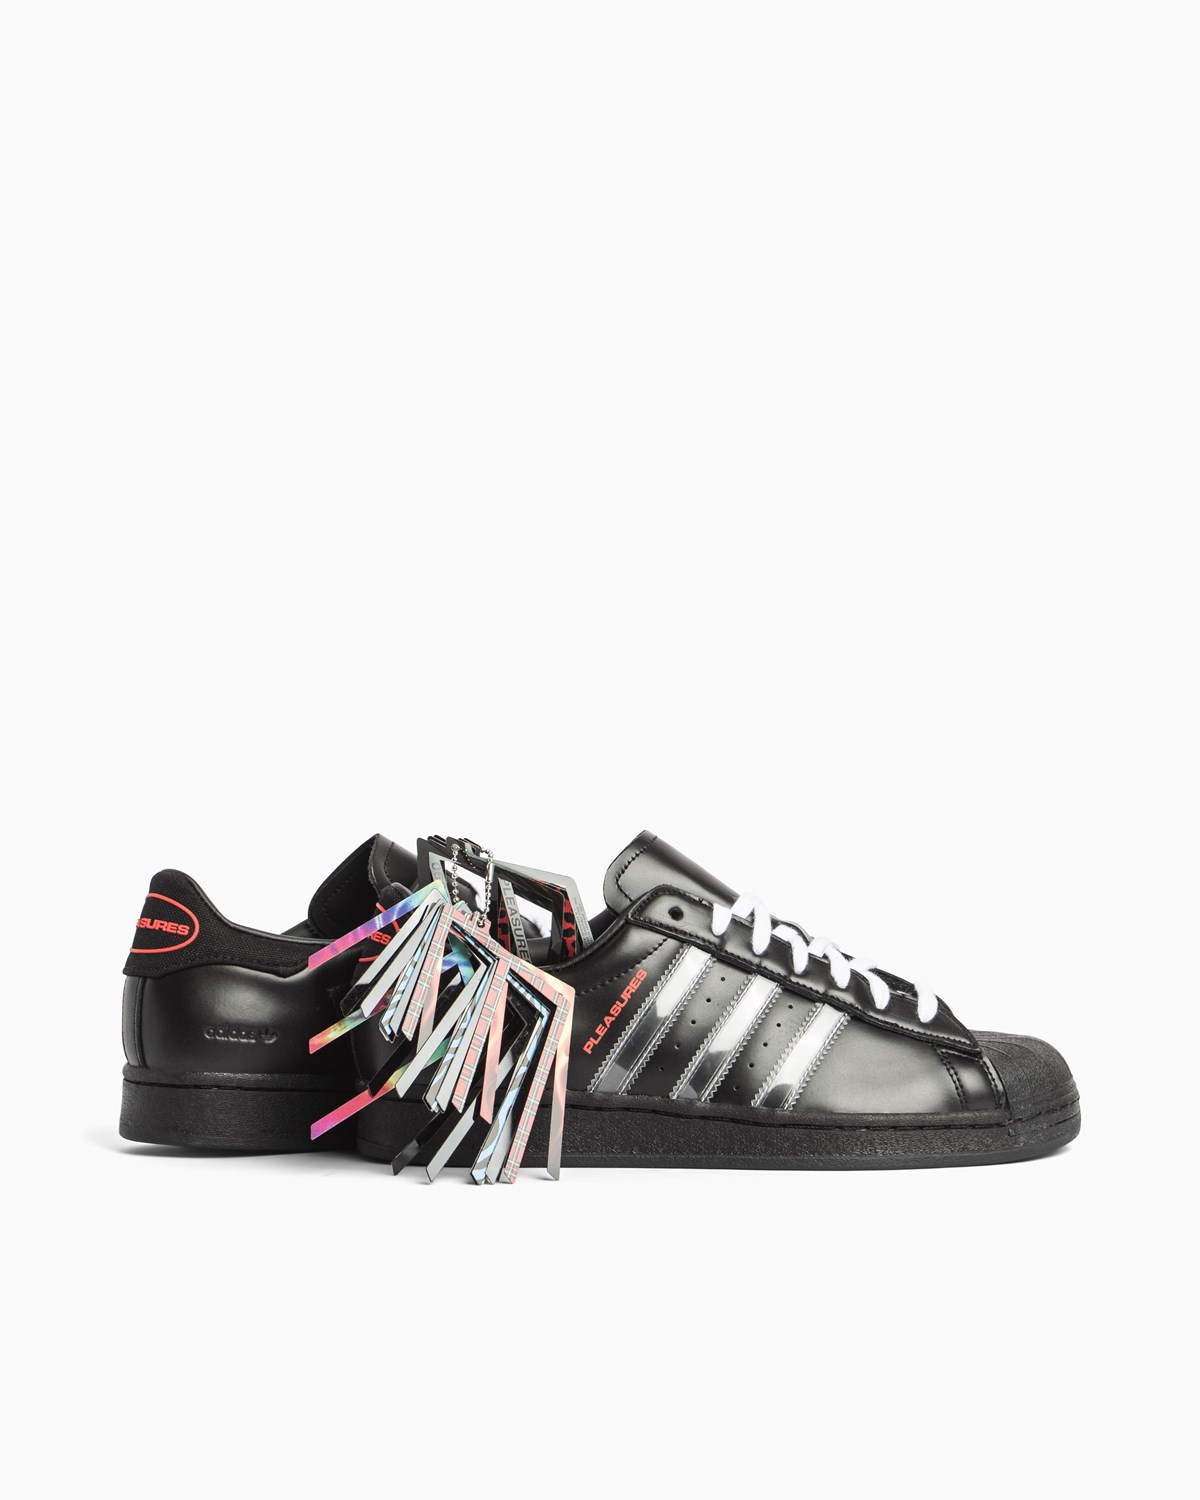 Superstar Pleasures Adidas Consortium Footwear Sneakers Black